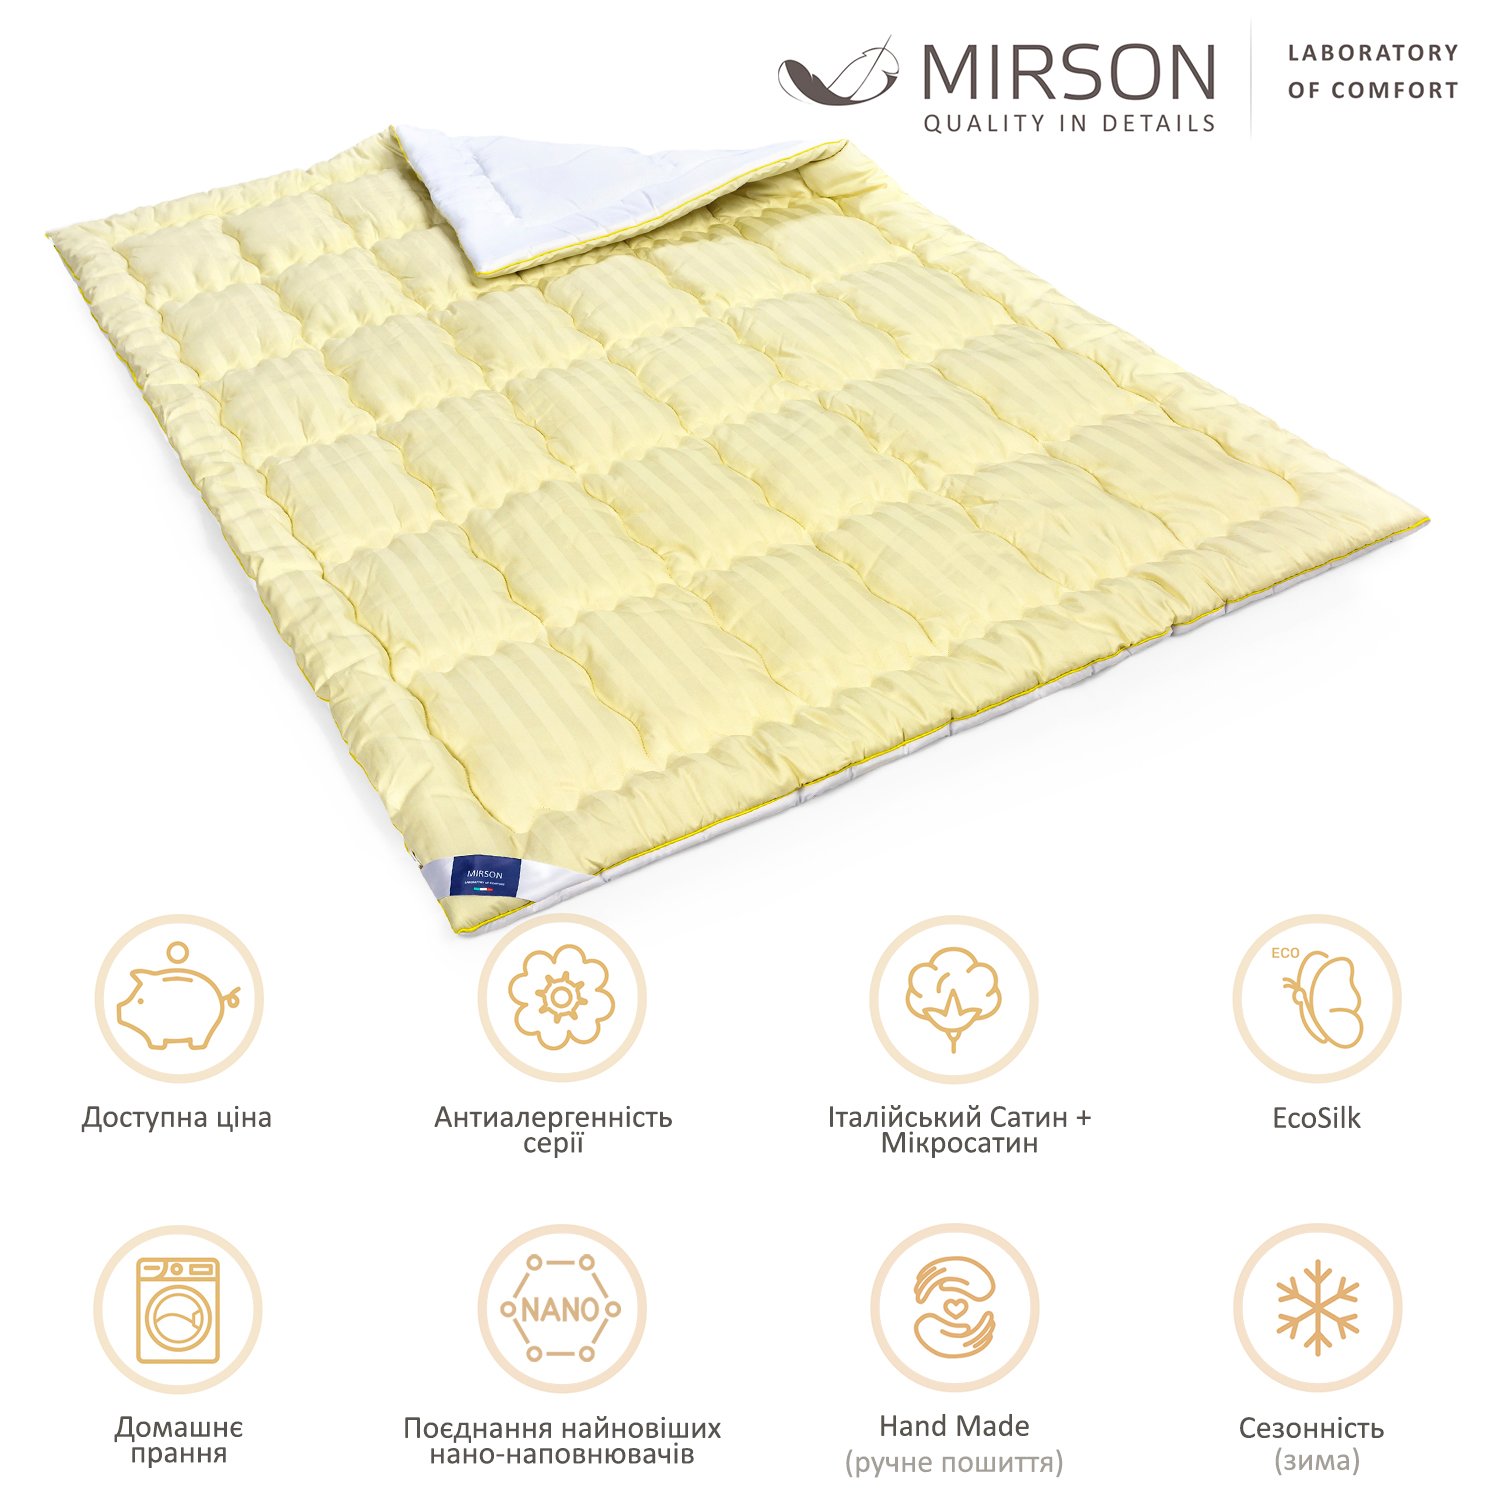 Одеяло антиаллергенное MirSon Carmela Hand Made EcoSilk №0555, зимнее, 140x205 см, желто-белое - фото 6